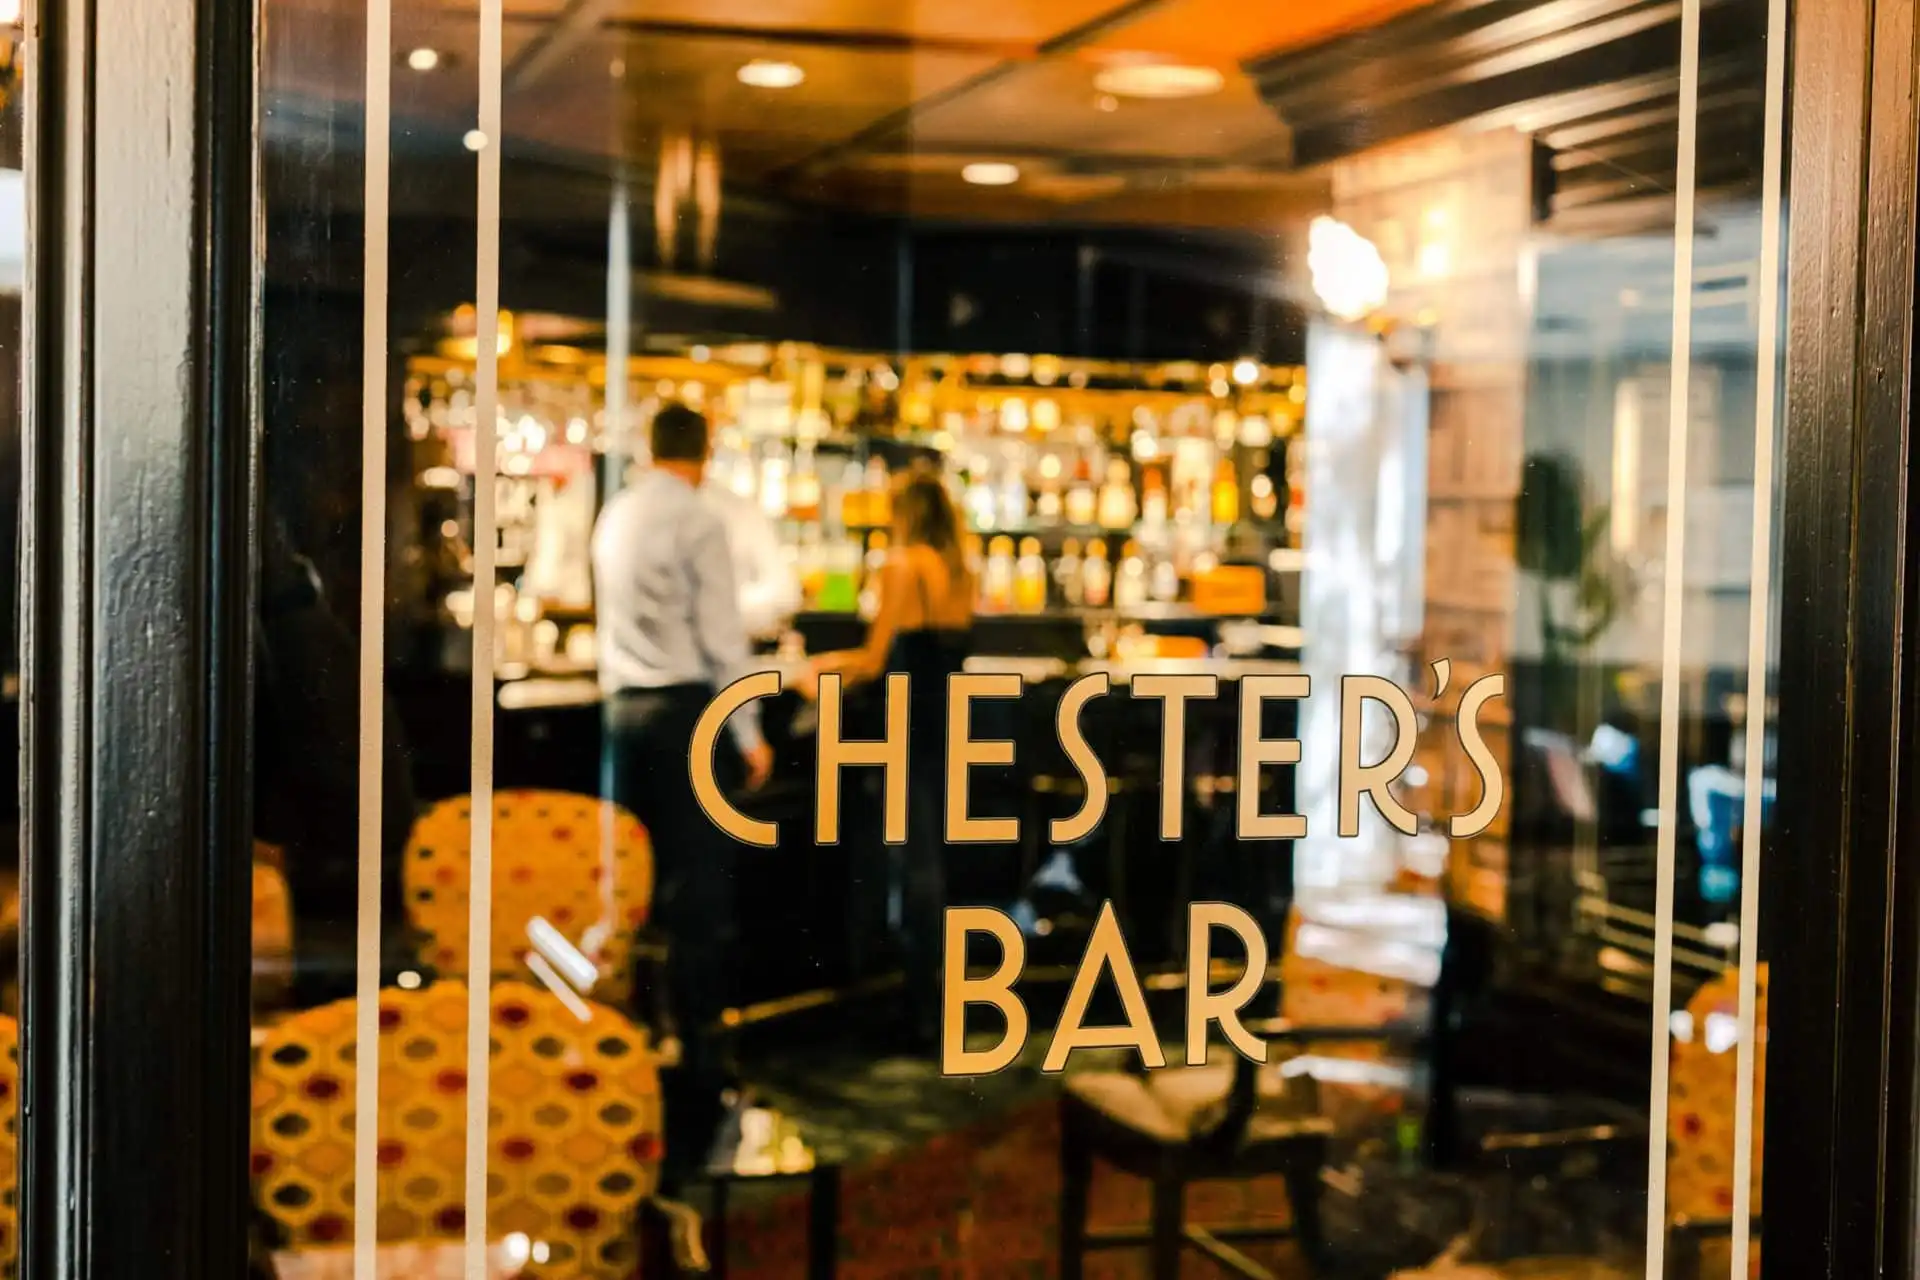 Chesters bar logo on door